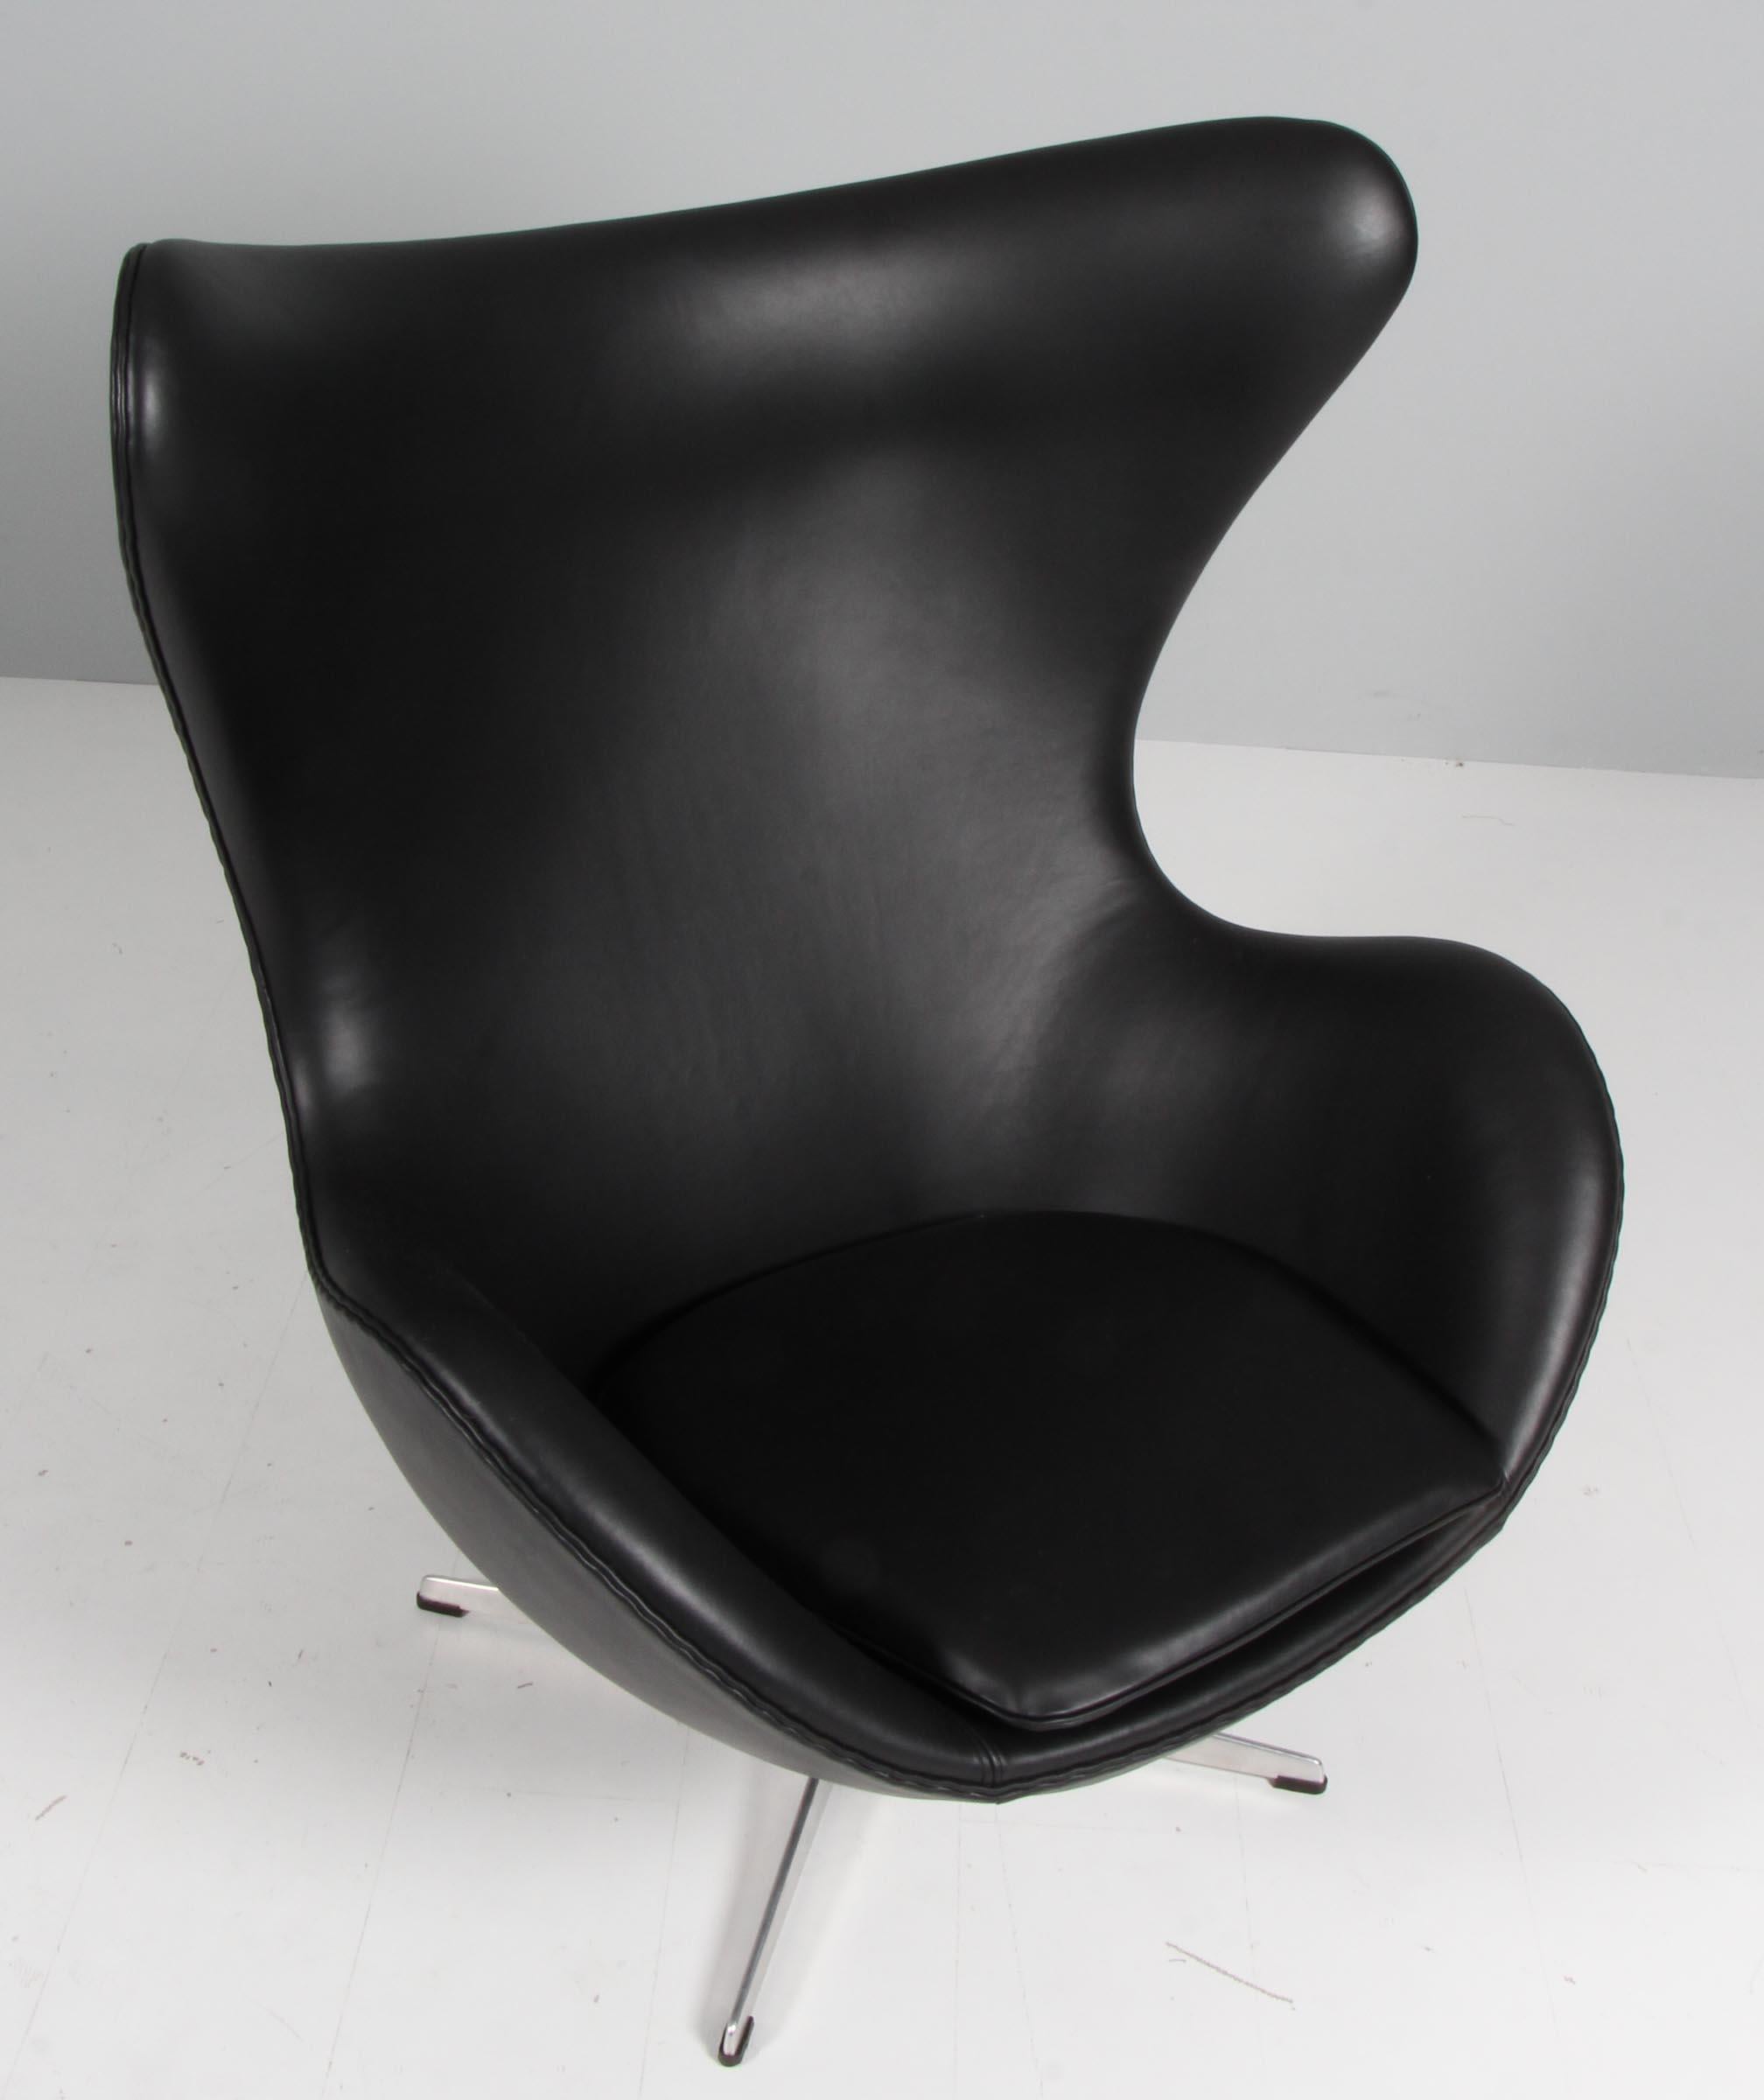 Chaise longue Arne Jacobsen modèle Egg. Nouvelle garniture en cuir aniline beurre noir.

Base profilée à quatre étoiles.

Fabriqué par Fritz Hansen.

Cette chaise emblématique est l'une des plus célèbres au monde et est reconnue par les amateurs de